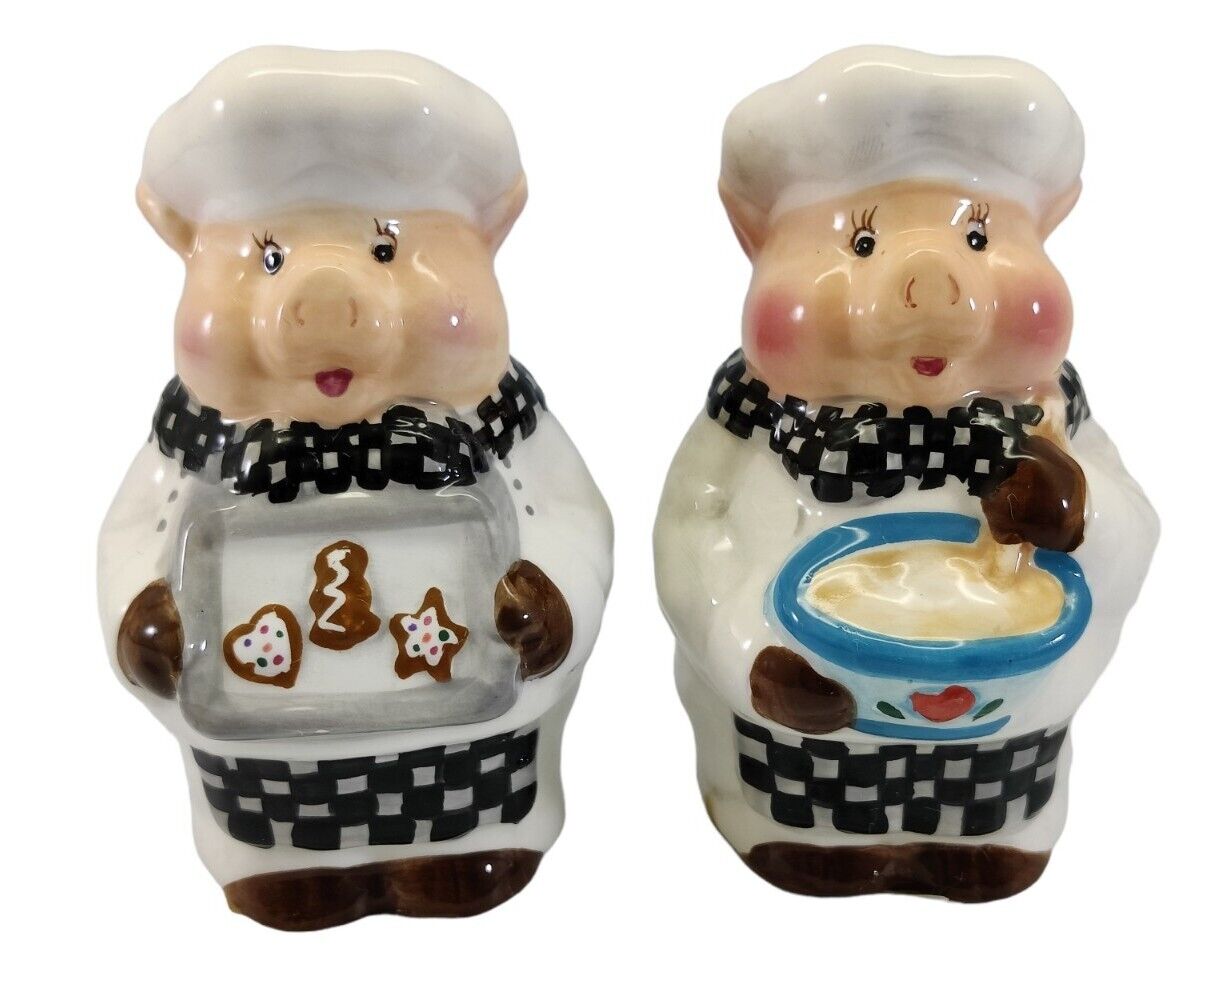 Mr & Mrs Pig Chef Cooking Baking Ceramic Salt & Pepper Shaker Set 